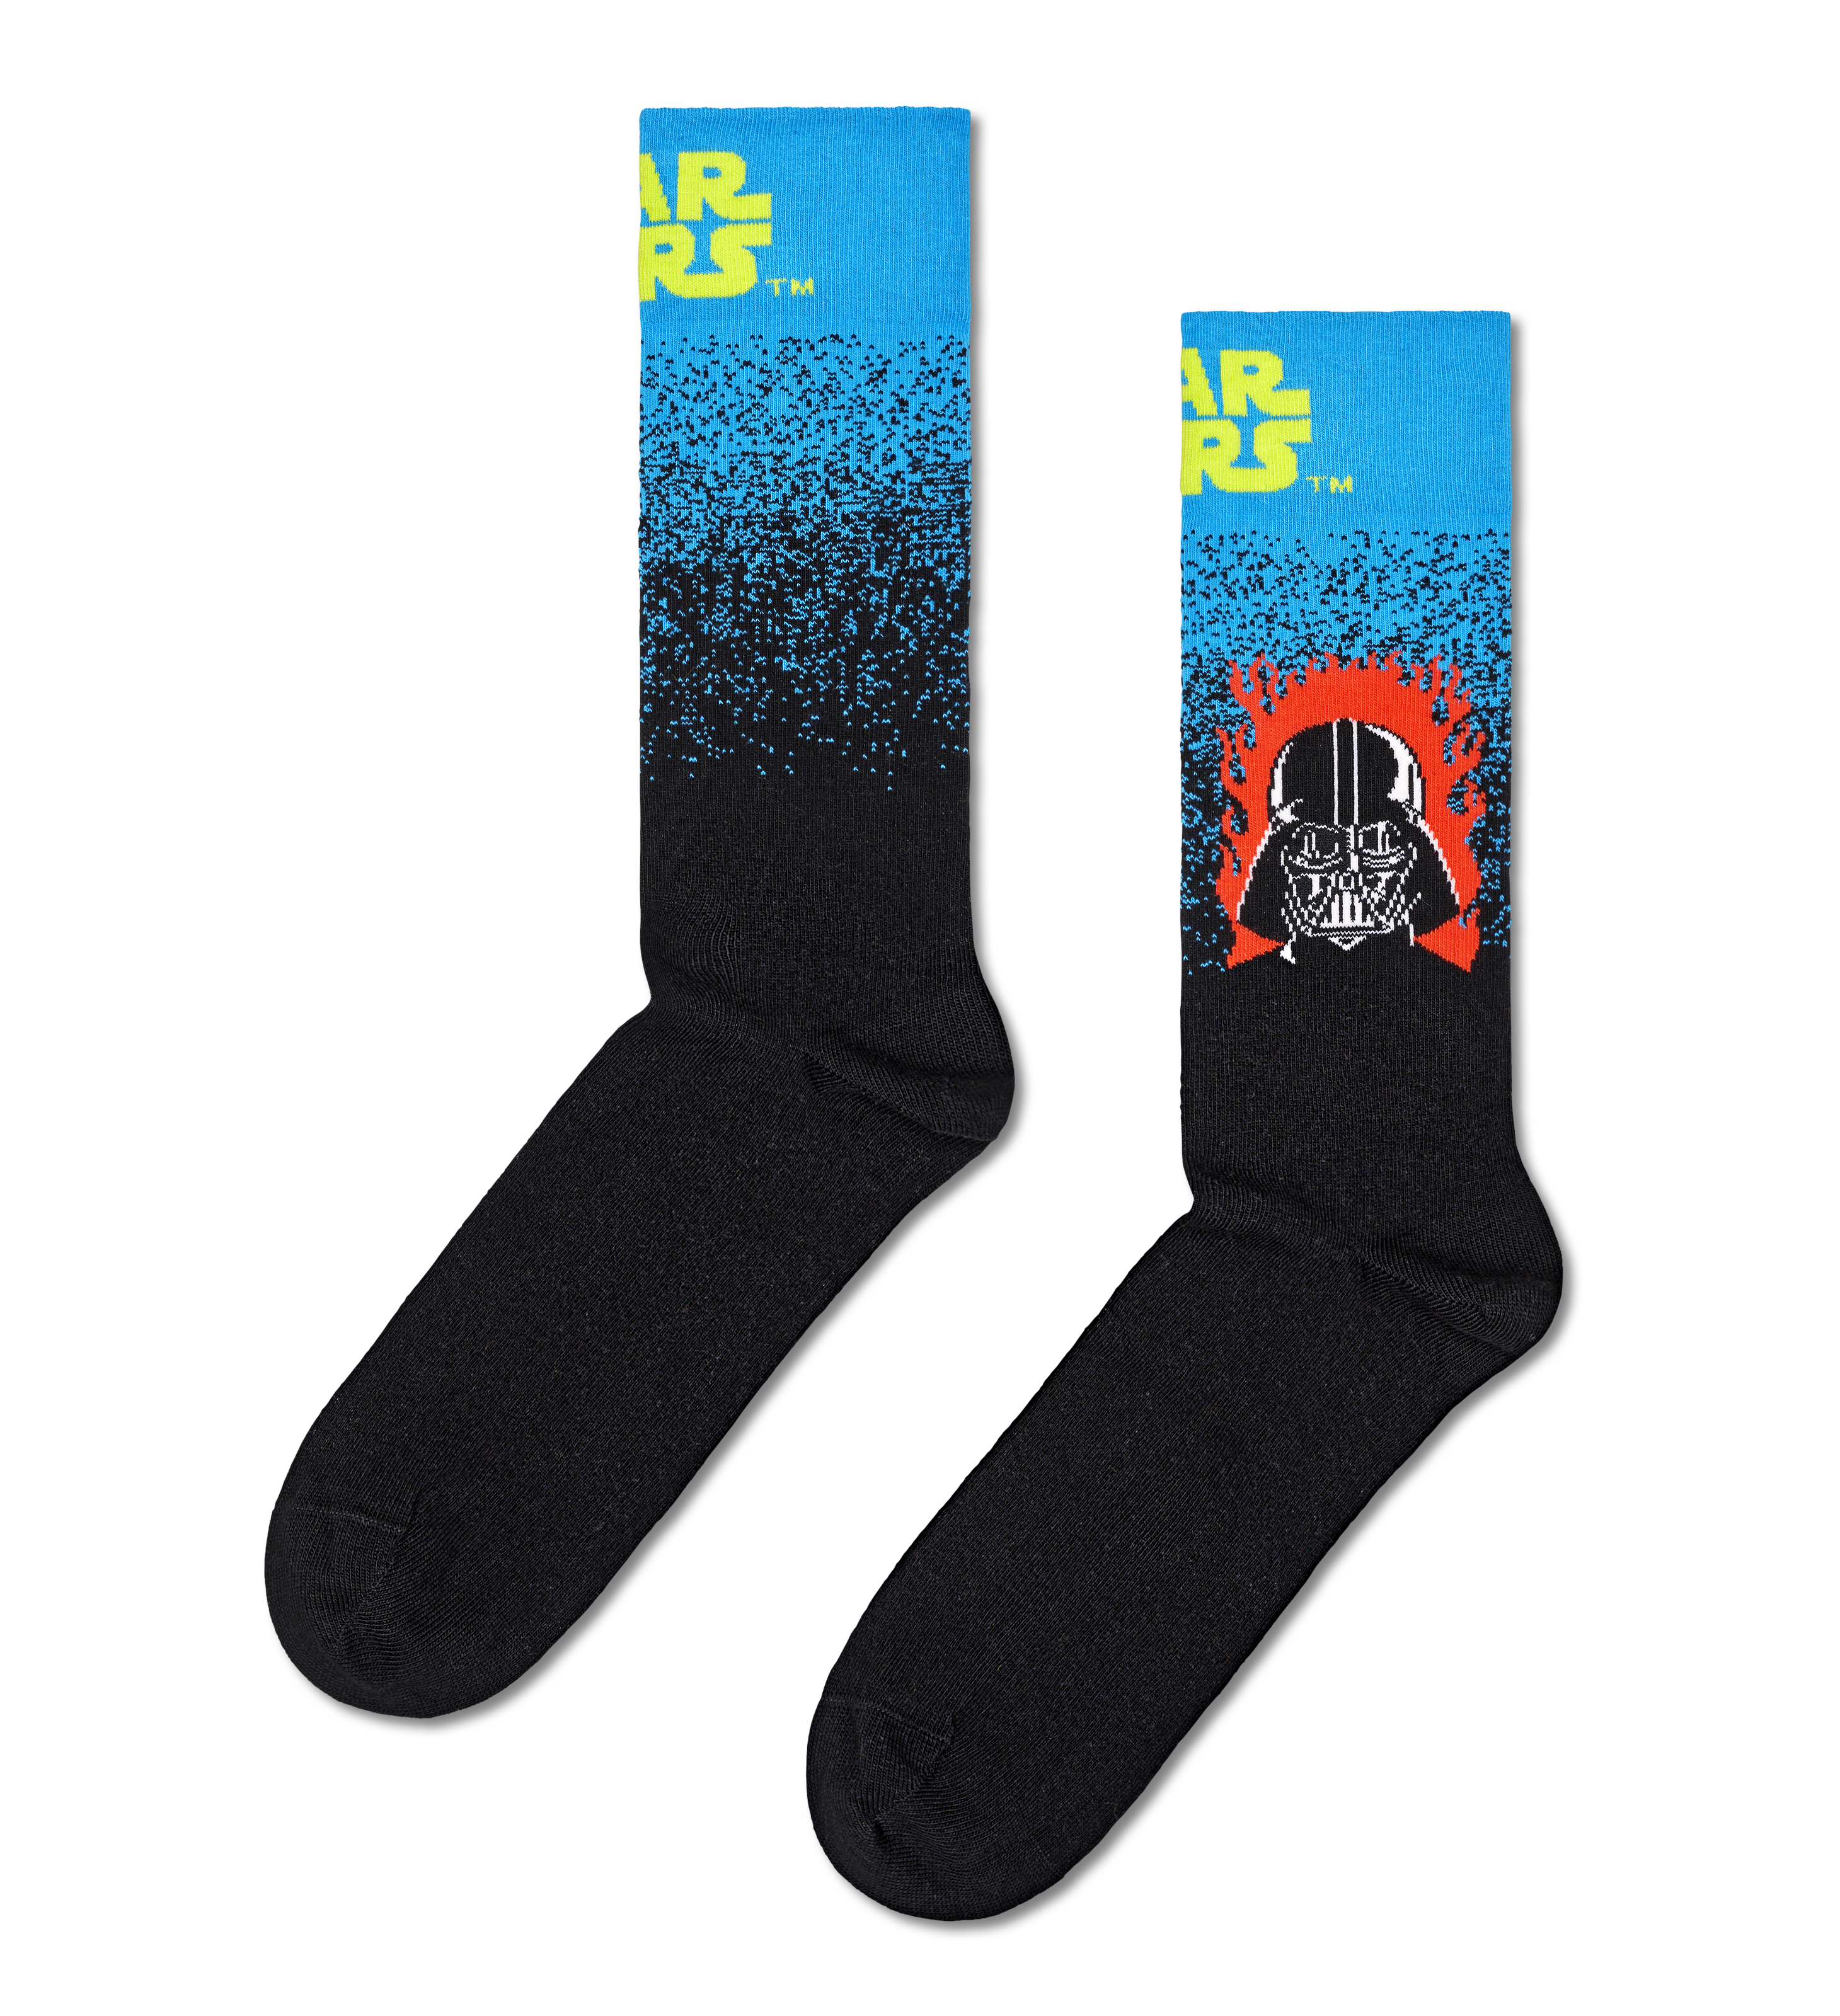 Star Wars™ Darth Vader Crew Socken product